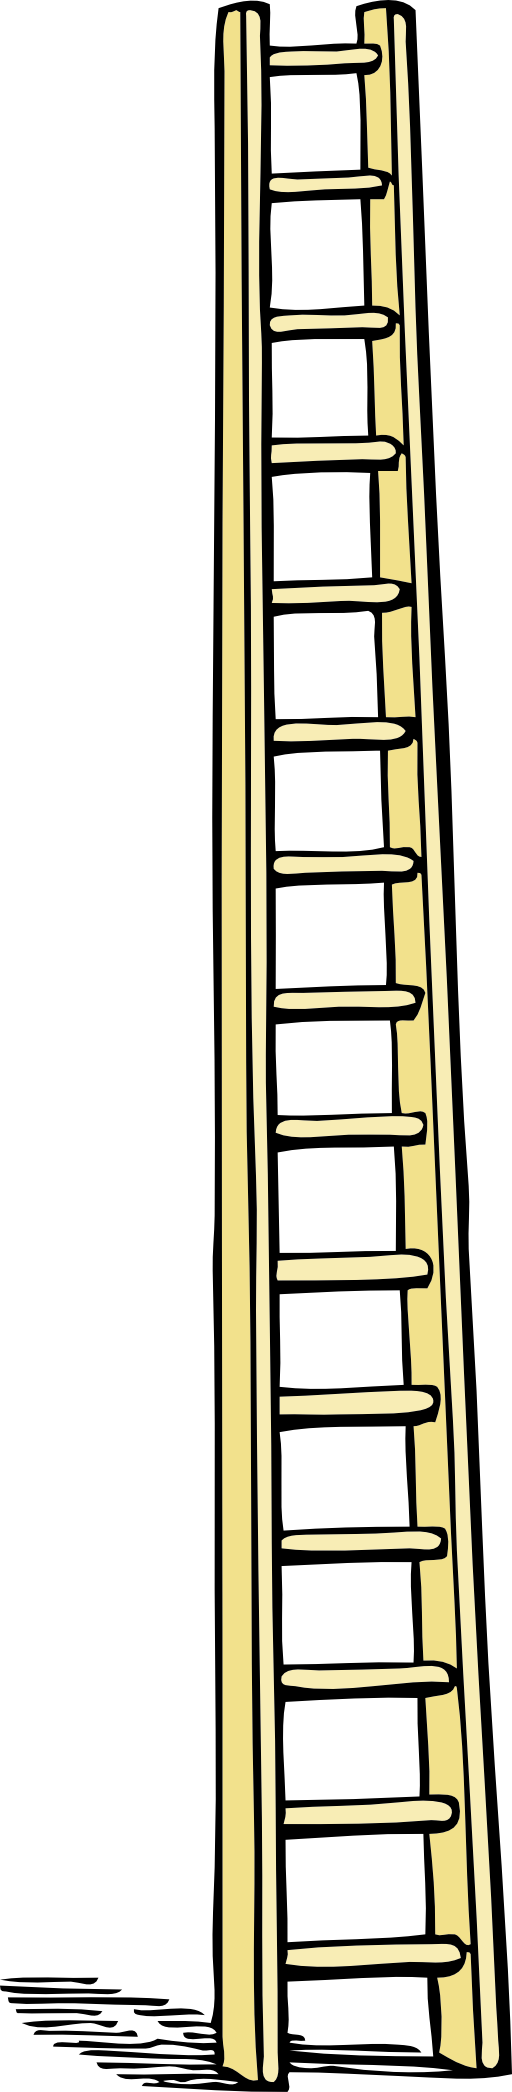 fire ladder clip art - photo #3